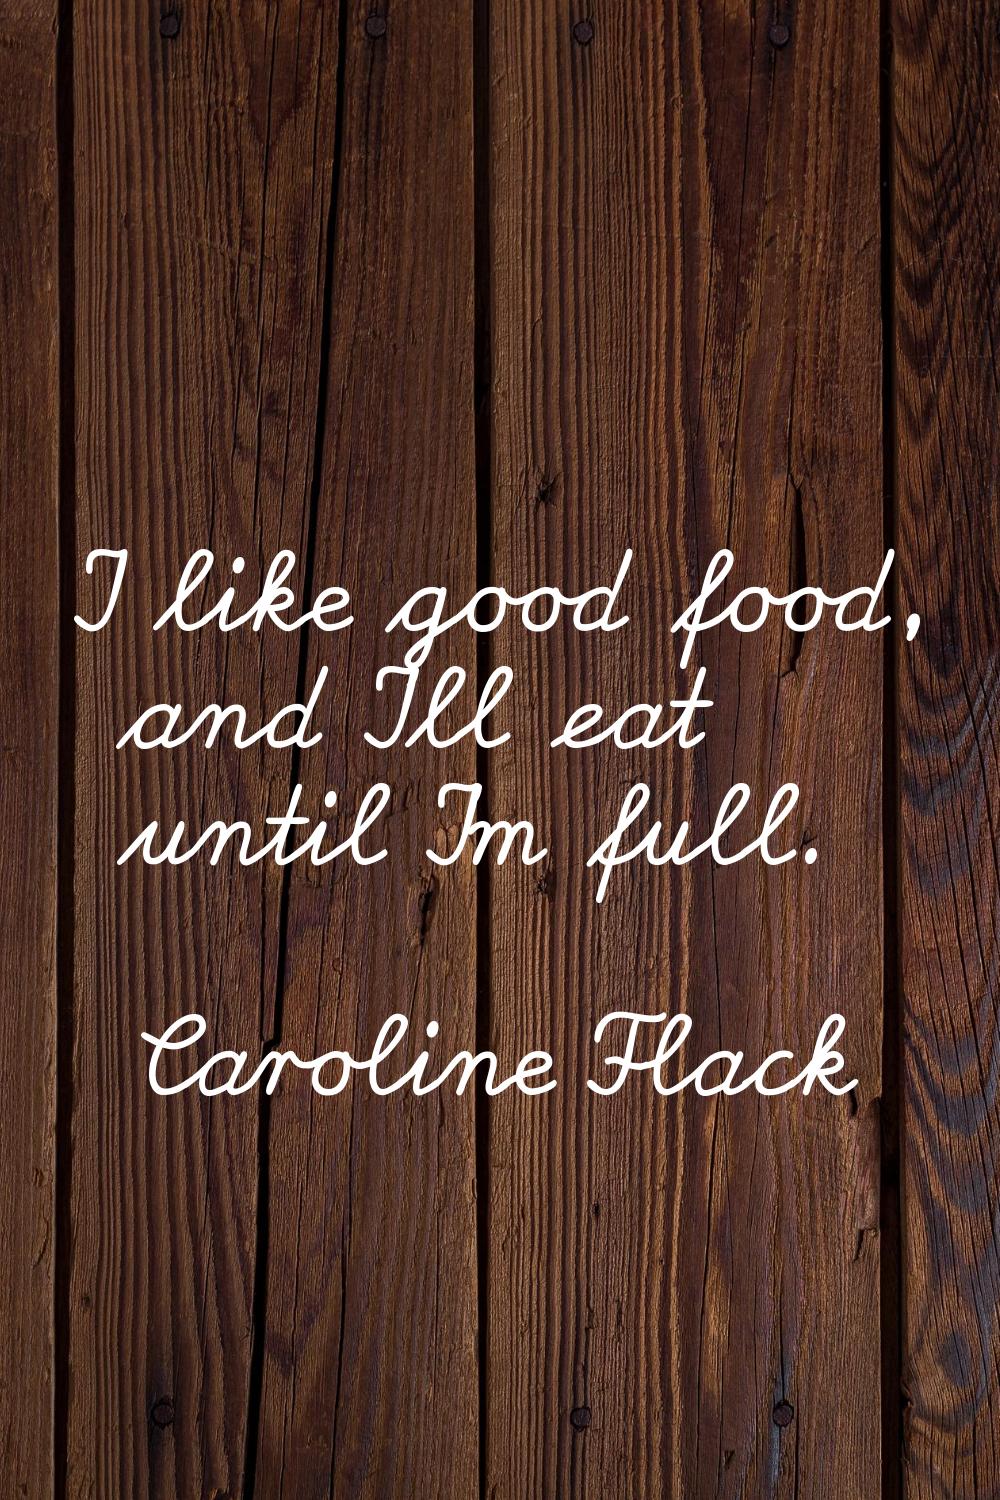 I like good food, and I'll eat until I'm full.